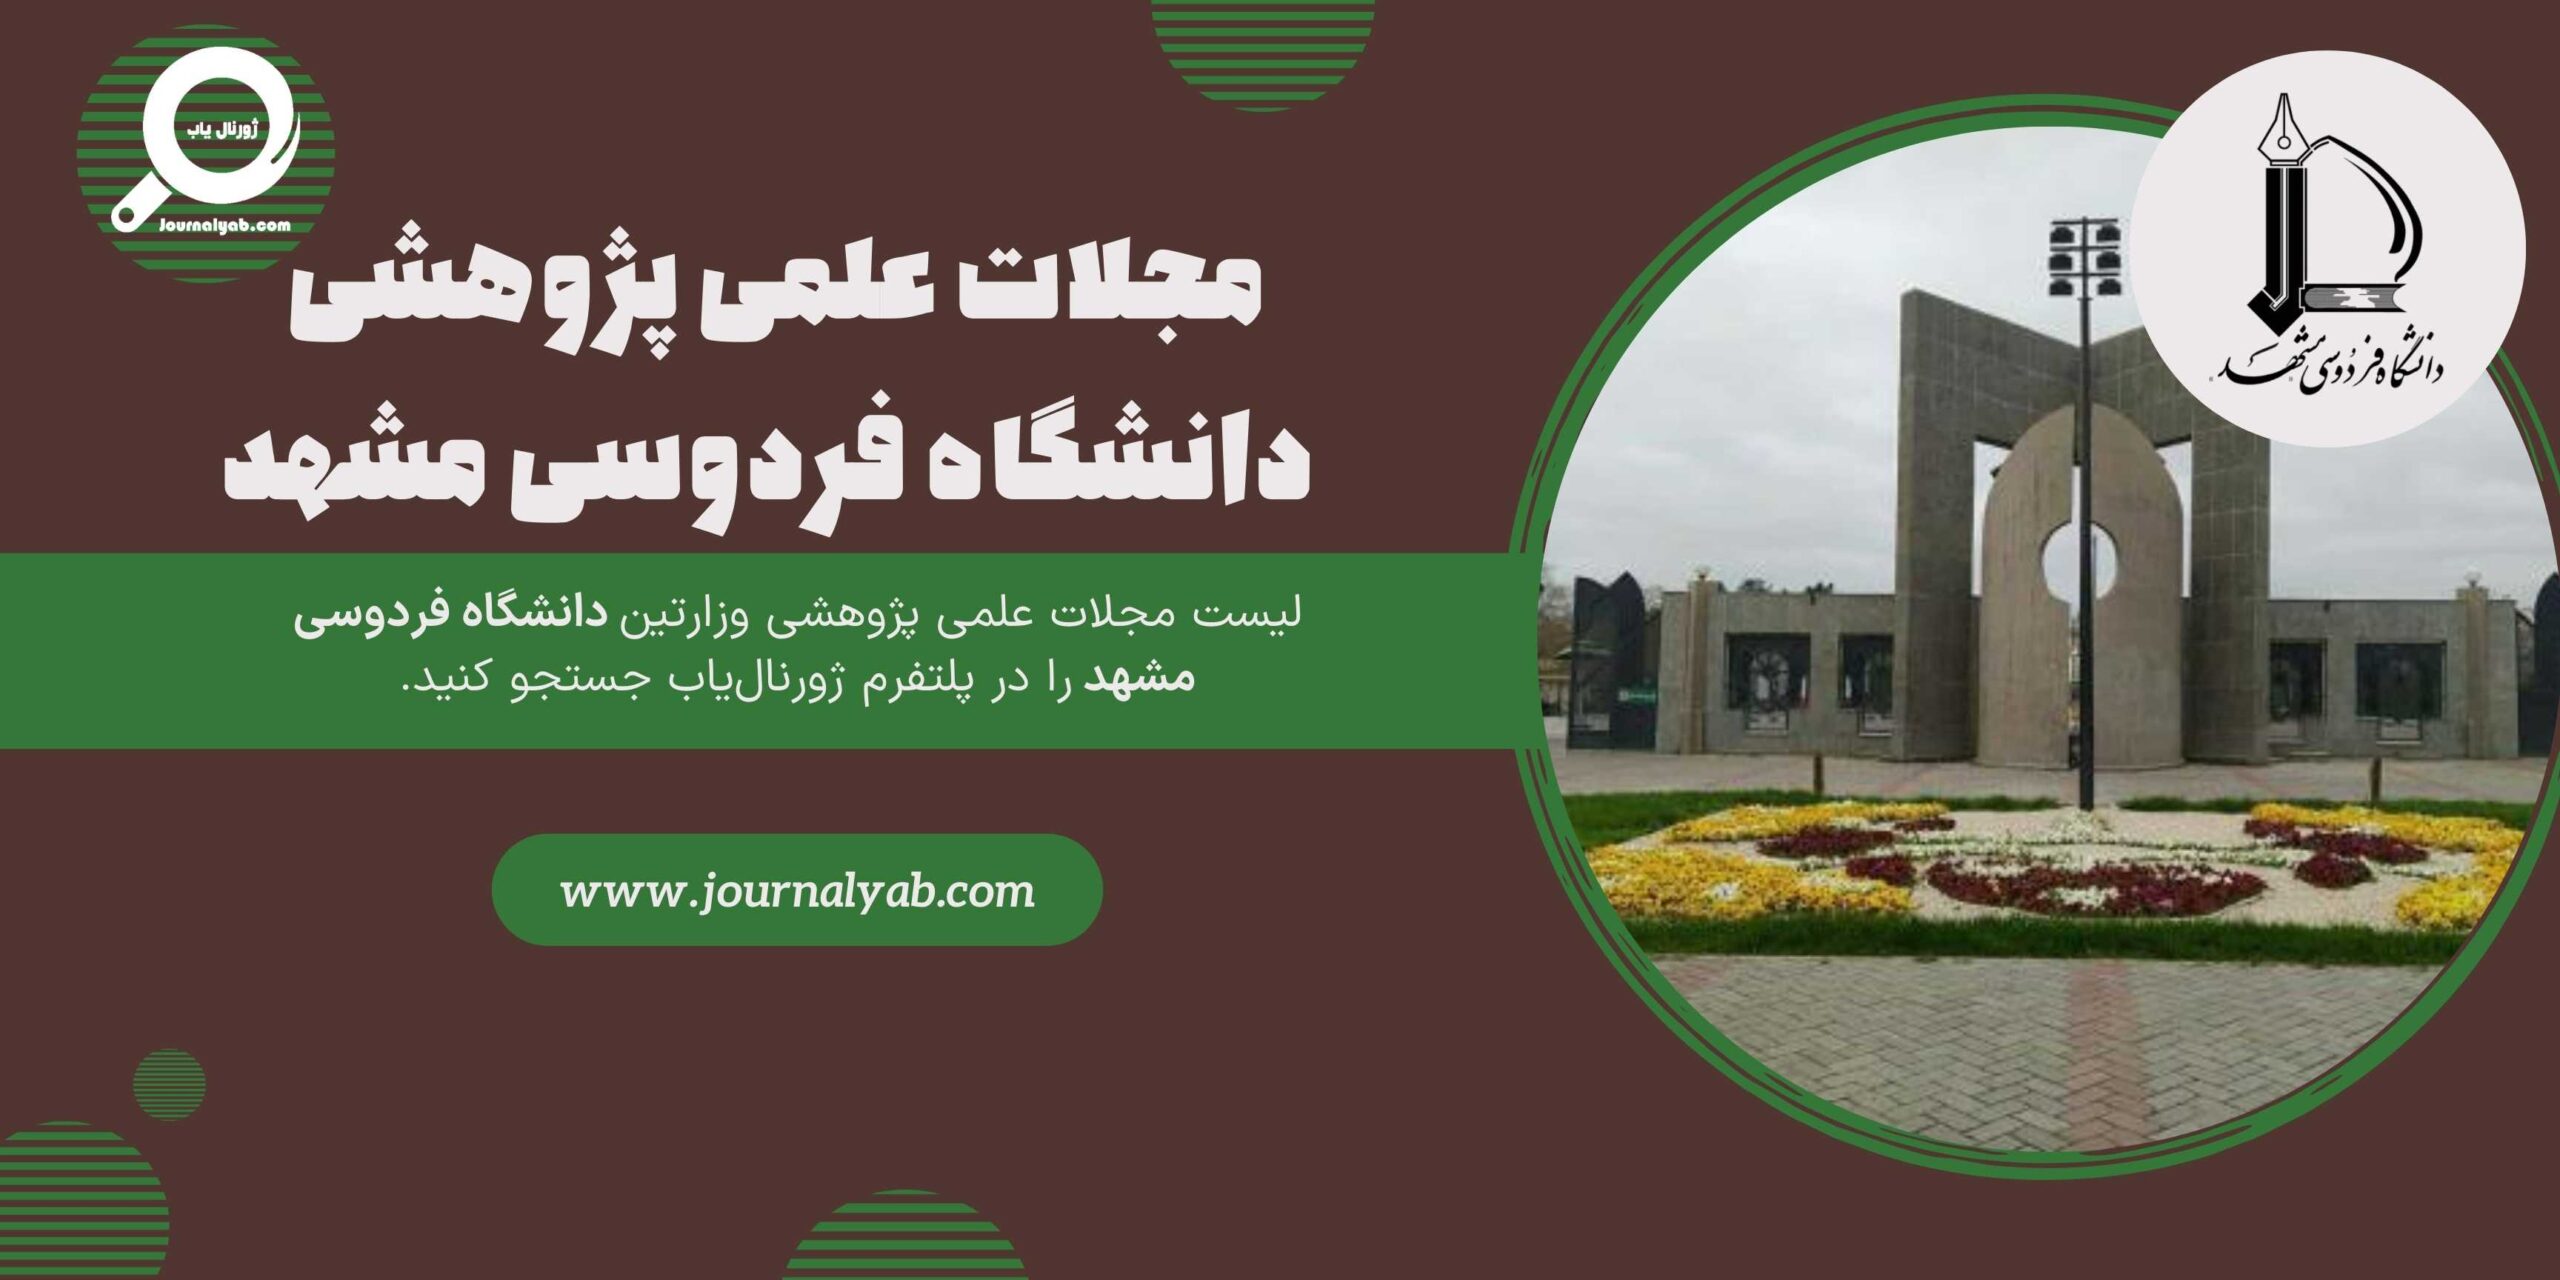 لیست مجلات دانشگاه فردوسی مشهد